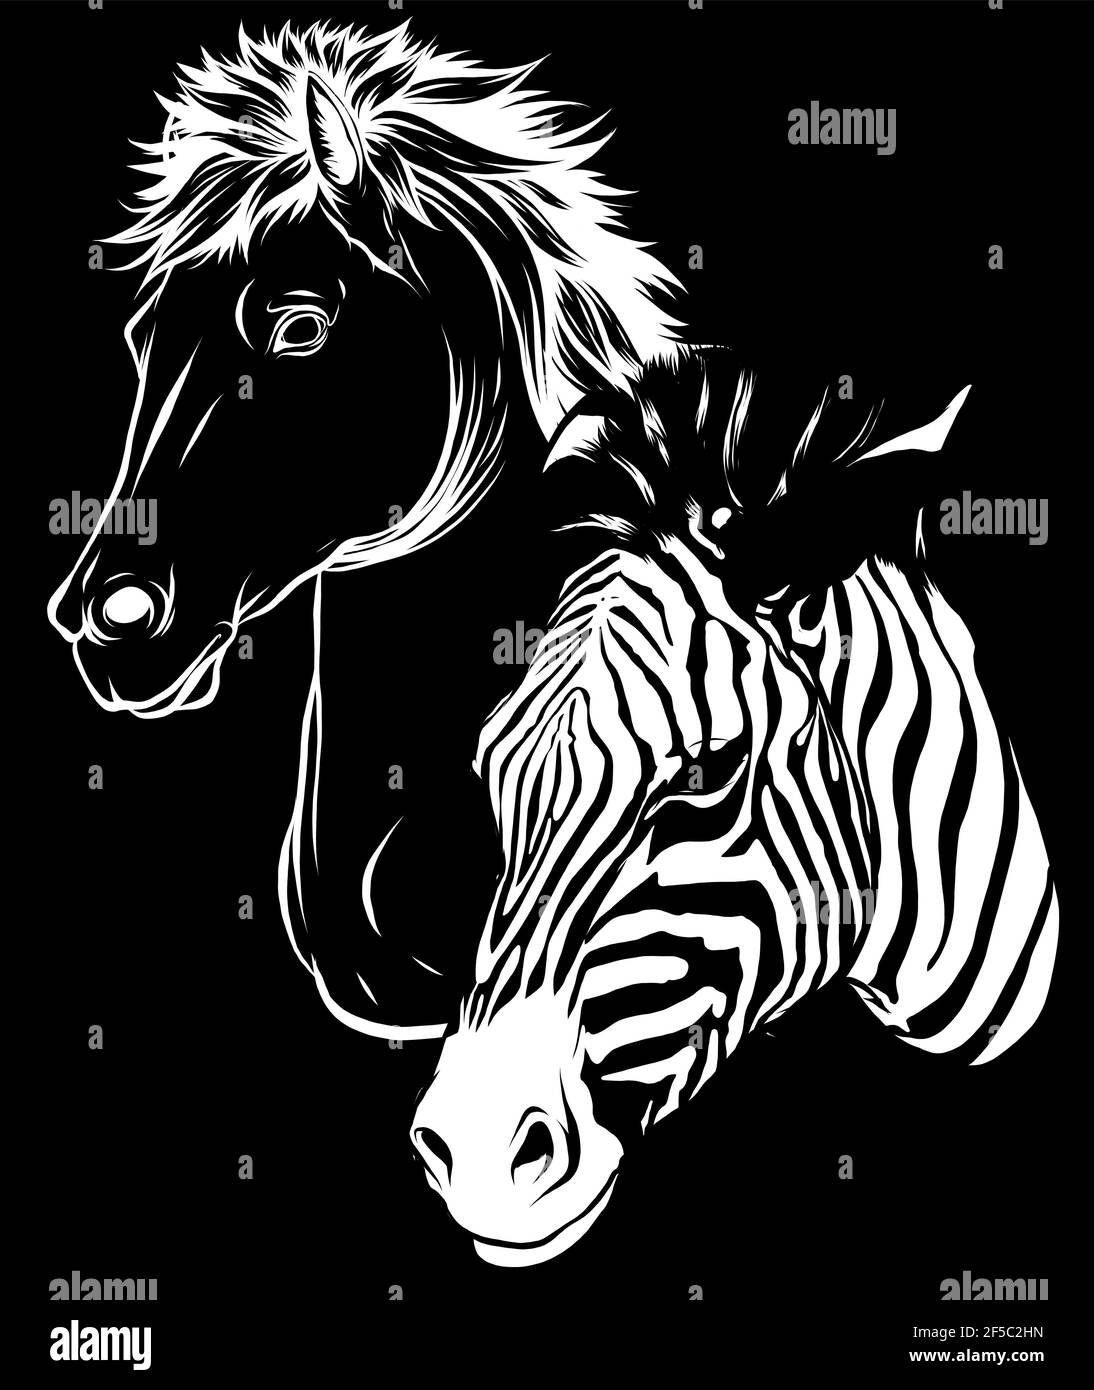 Weiße Silhouette von Zebra und Pferdeköpfe Profil auf schwarz Hintergrund Stock Vektor